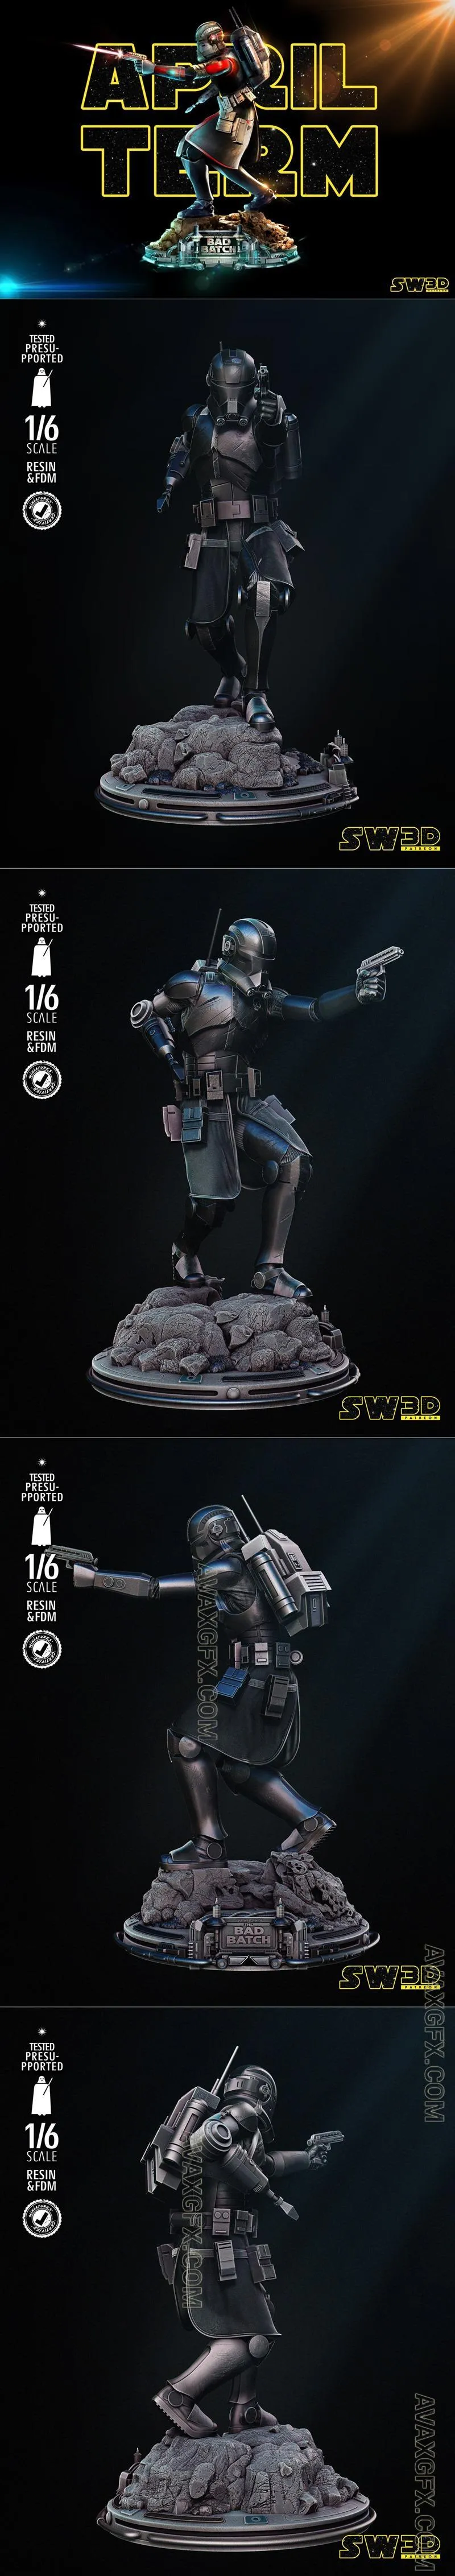 Star Wars - Echo Sculpture - STL 3D Model